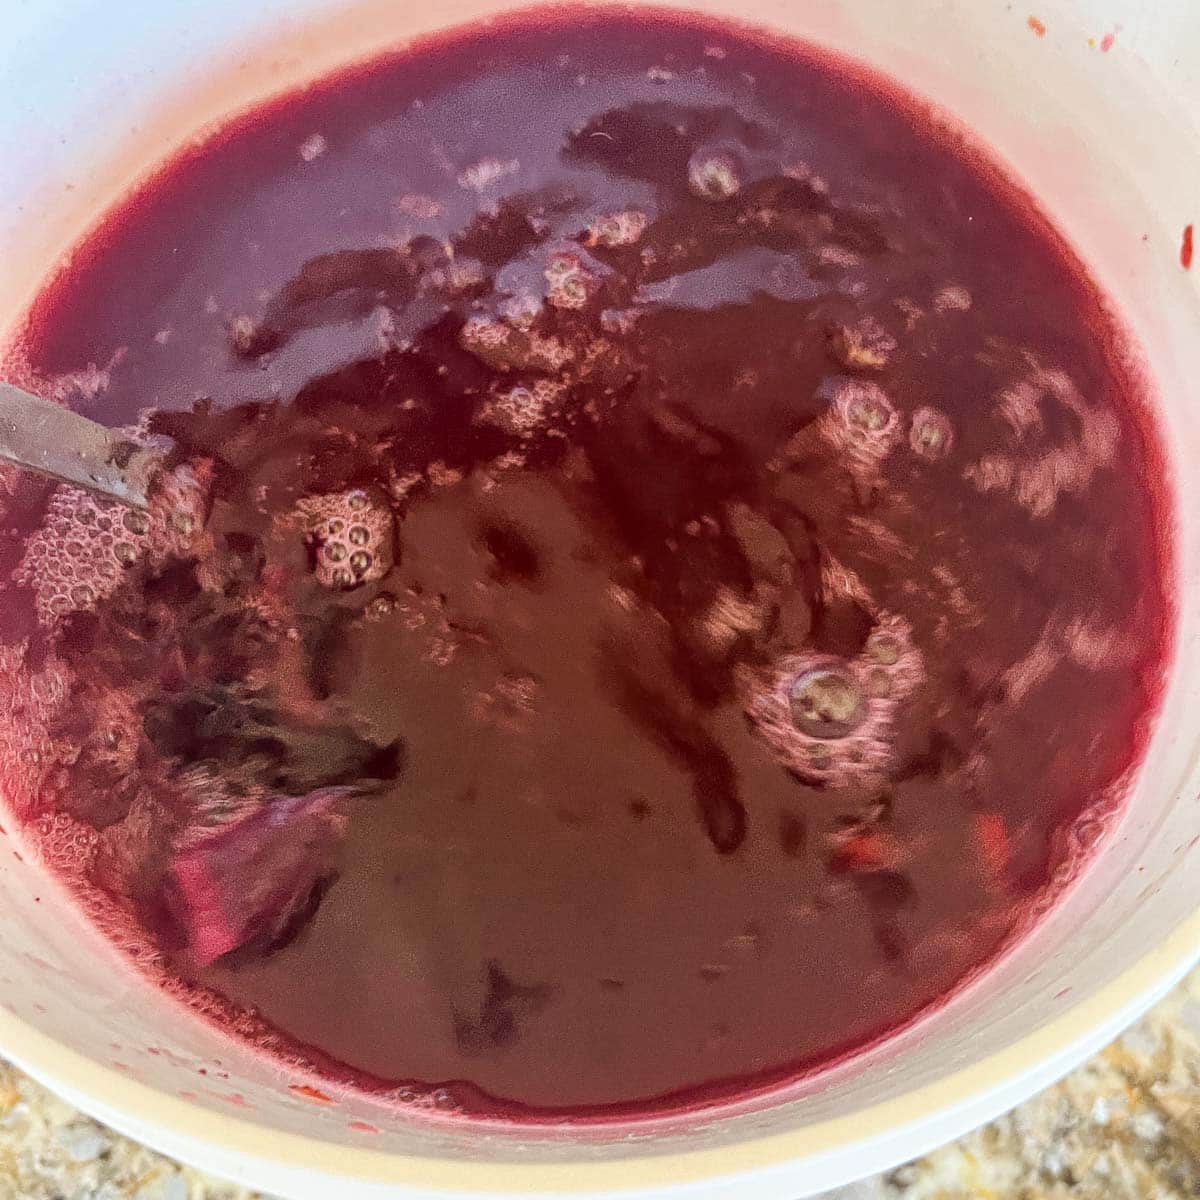 blueberry wine in fermentor bucket